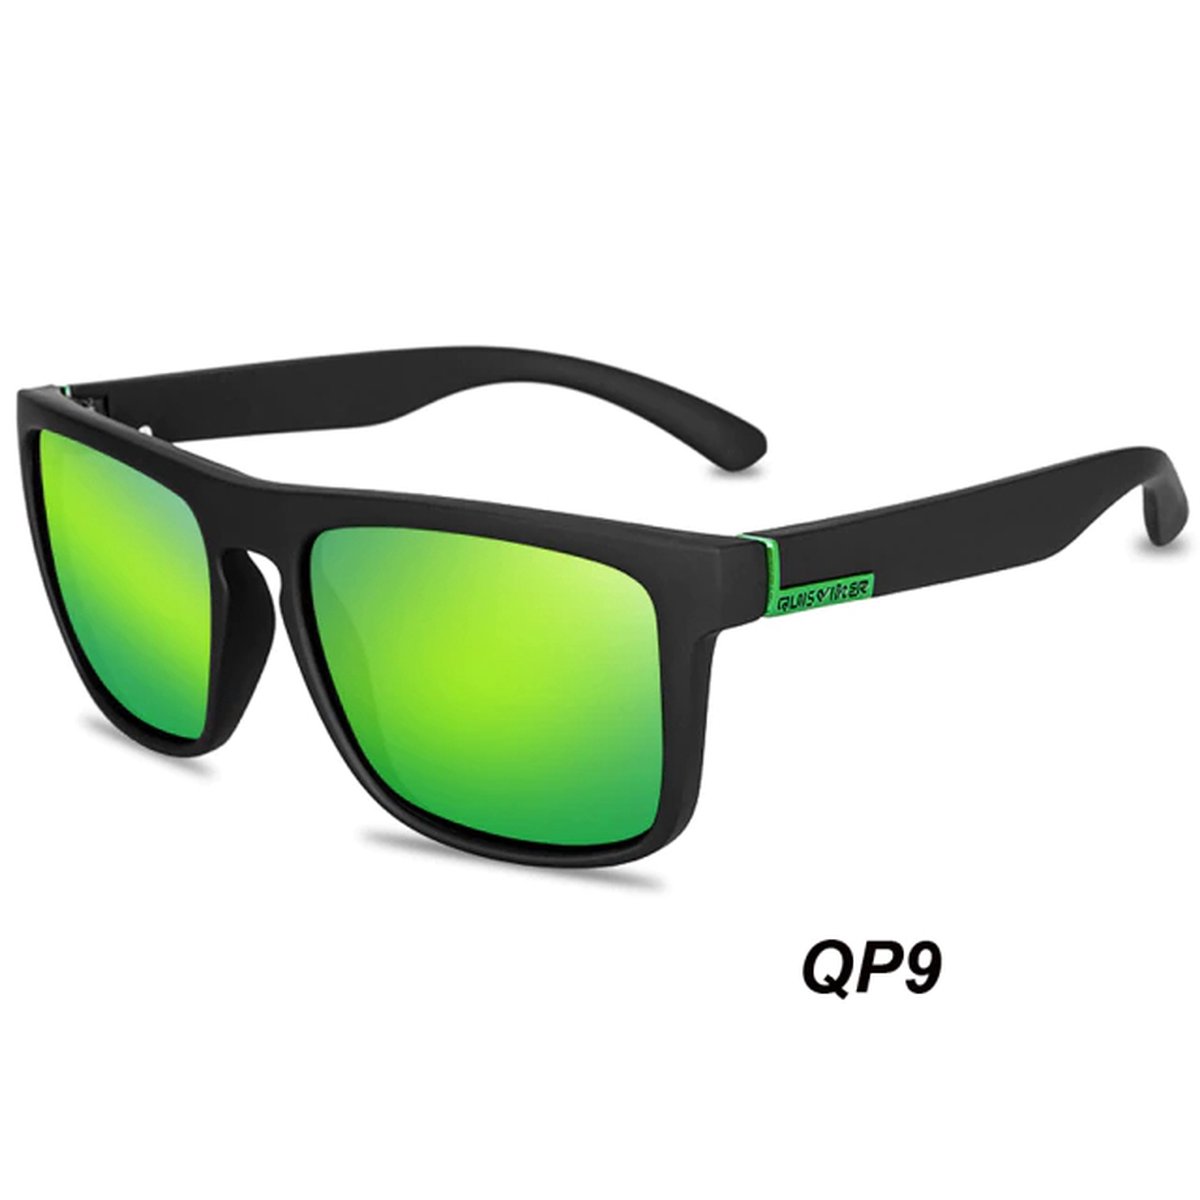 Sunglasses - Zonnebril met UV400 en polarisatie filter - Groen